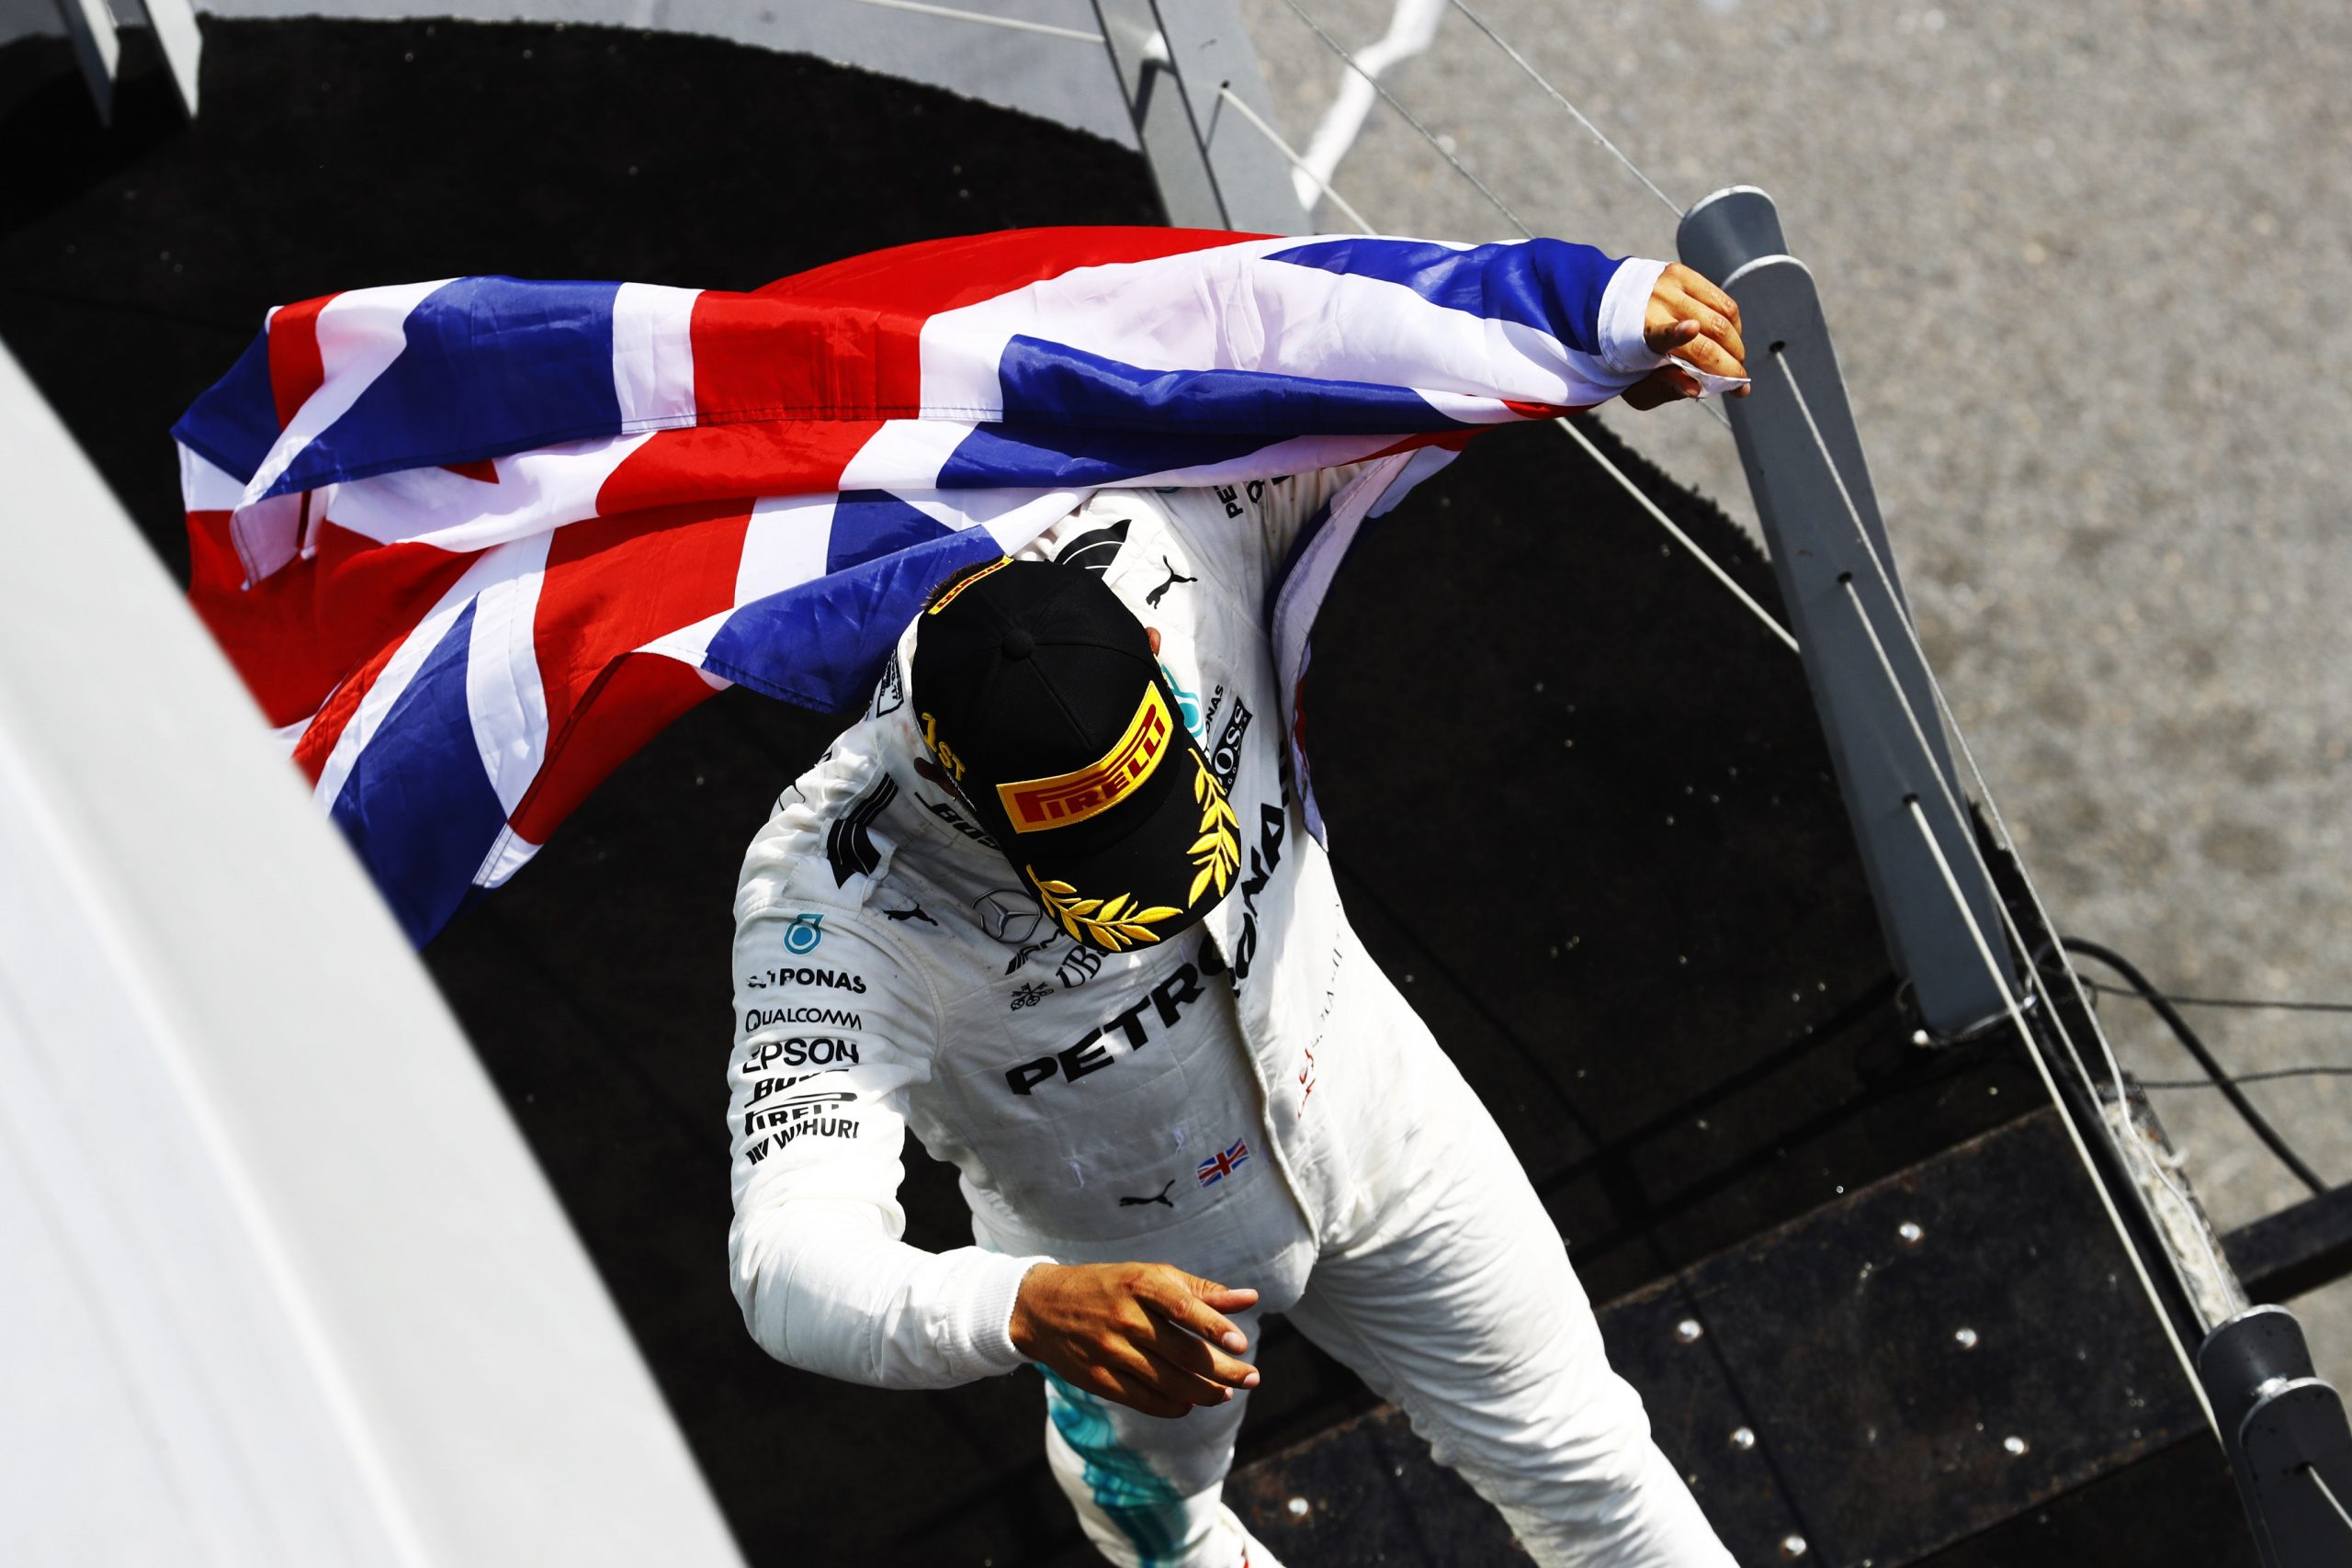 Οι τρείς λόγοι που κυριάρχησε στο Μόντρεαλ ο Lewis Hamilton